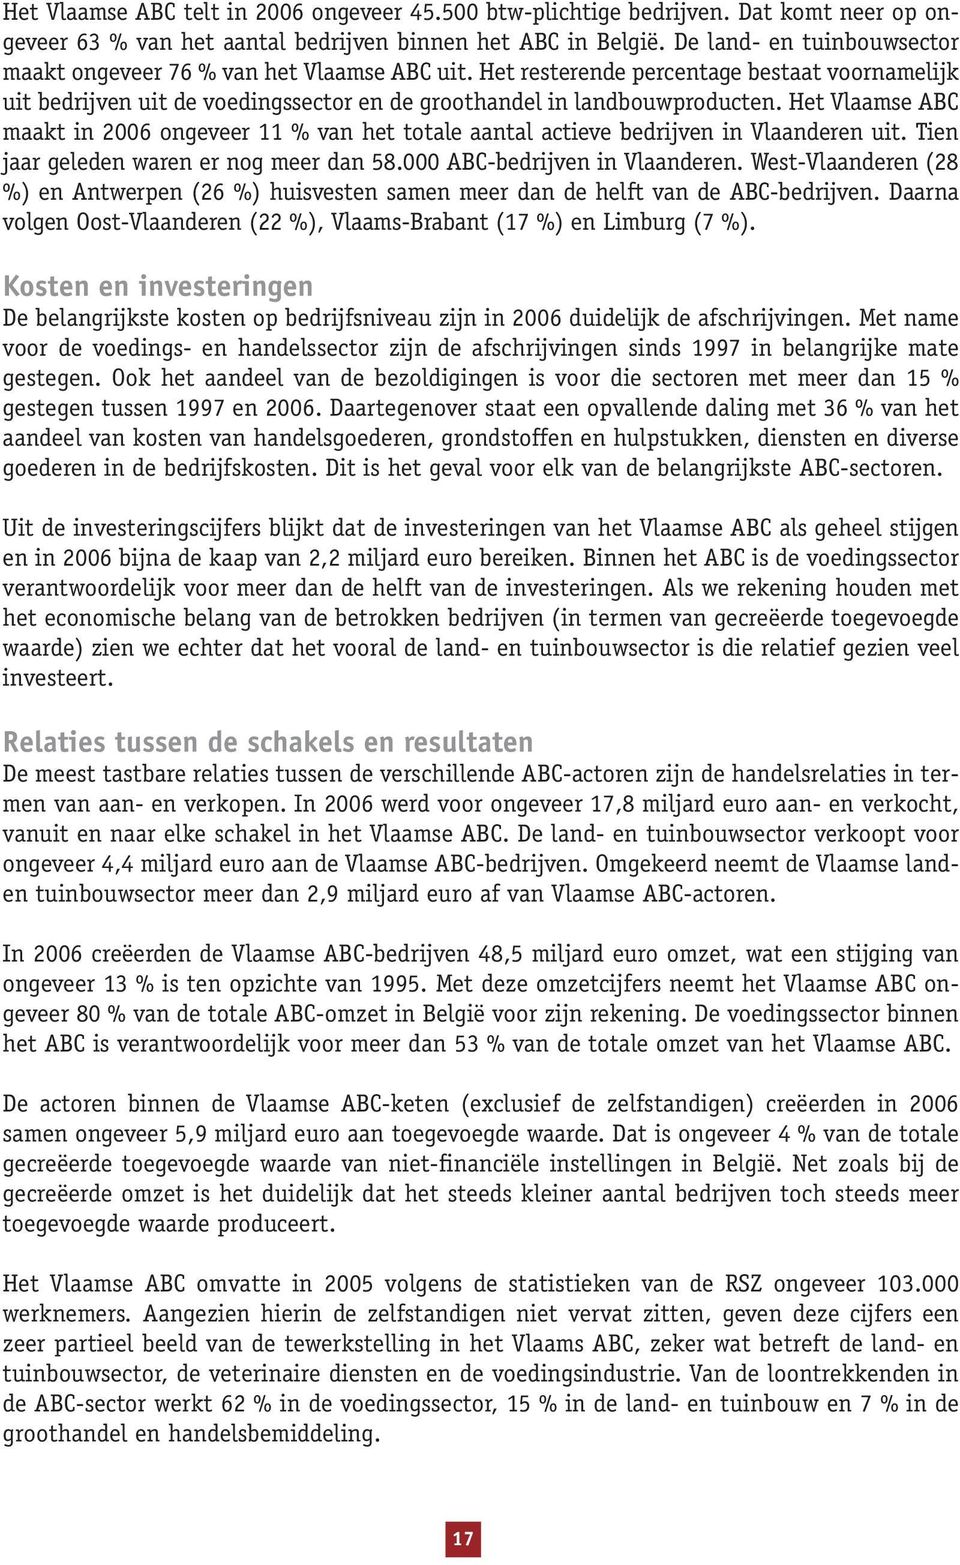 Het Vlaamse ABC maakt in 2006 ongeveer 11 % van het totale aantal actieve bedrijven in Vlaanderen uit. Tien jaar geleden waren er nog meer dan 58.000 ABC-bedrijven in Vlaanderen.